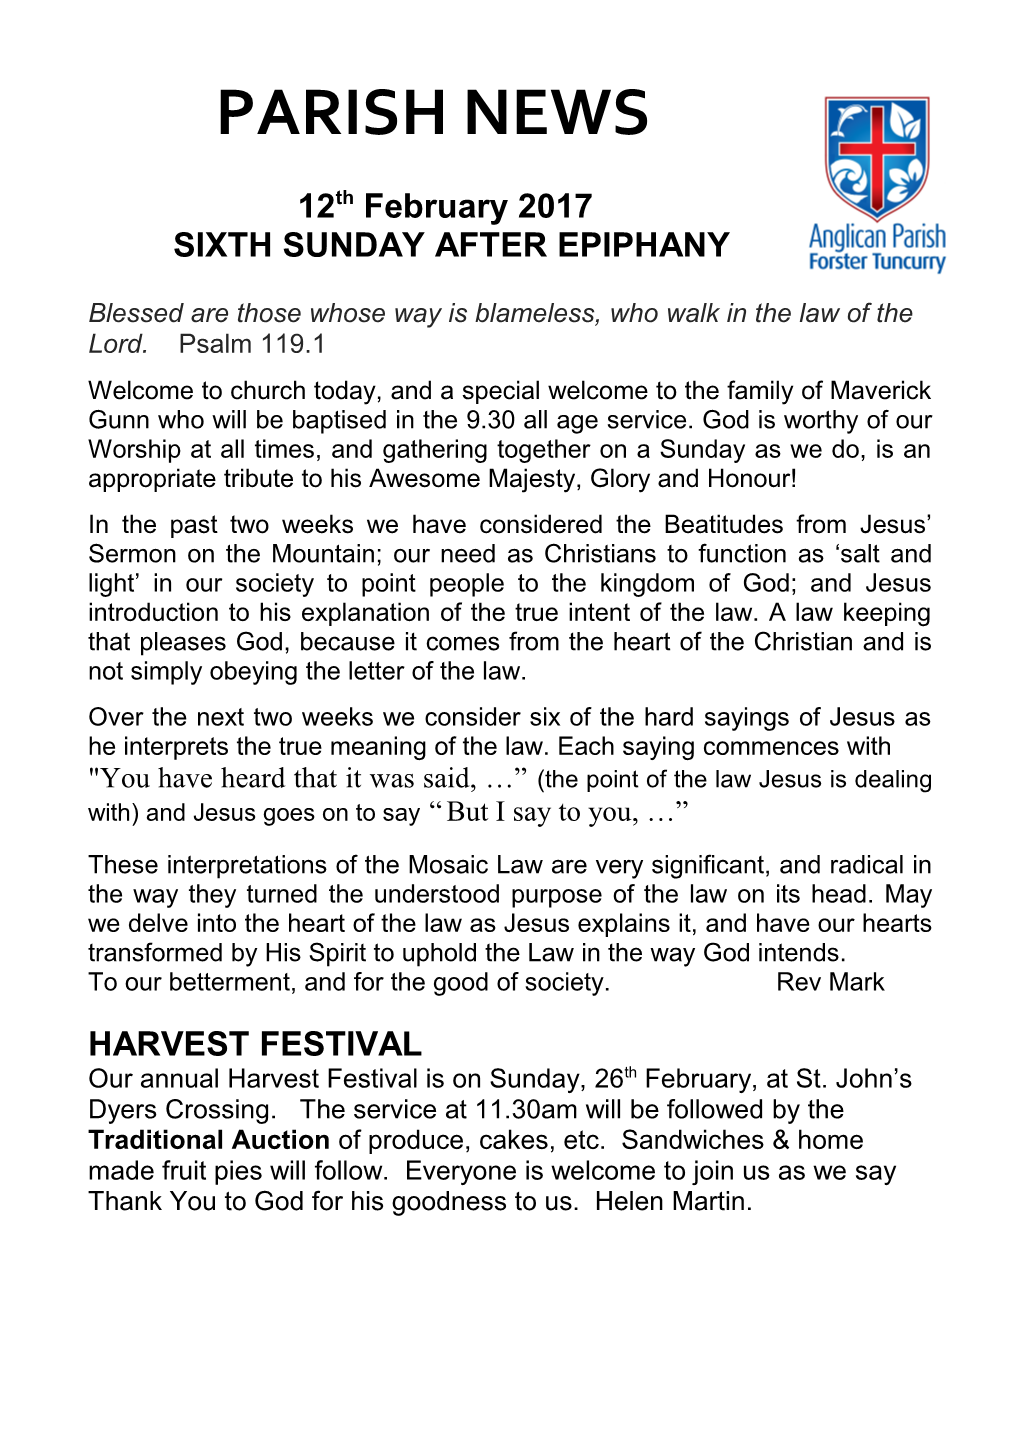 Sixth Sunday After Epiphany